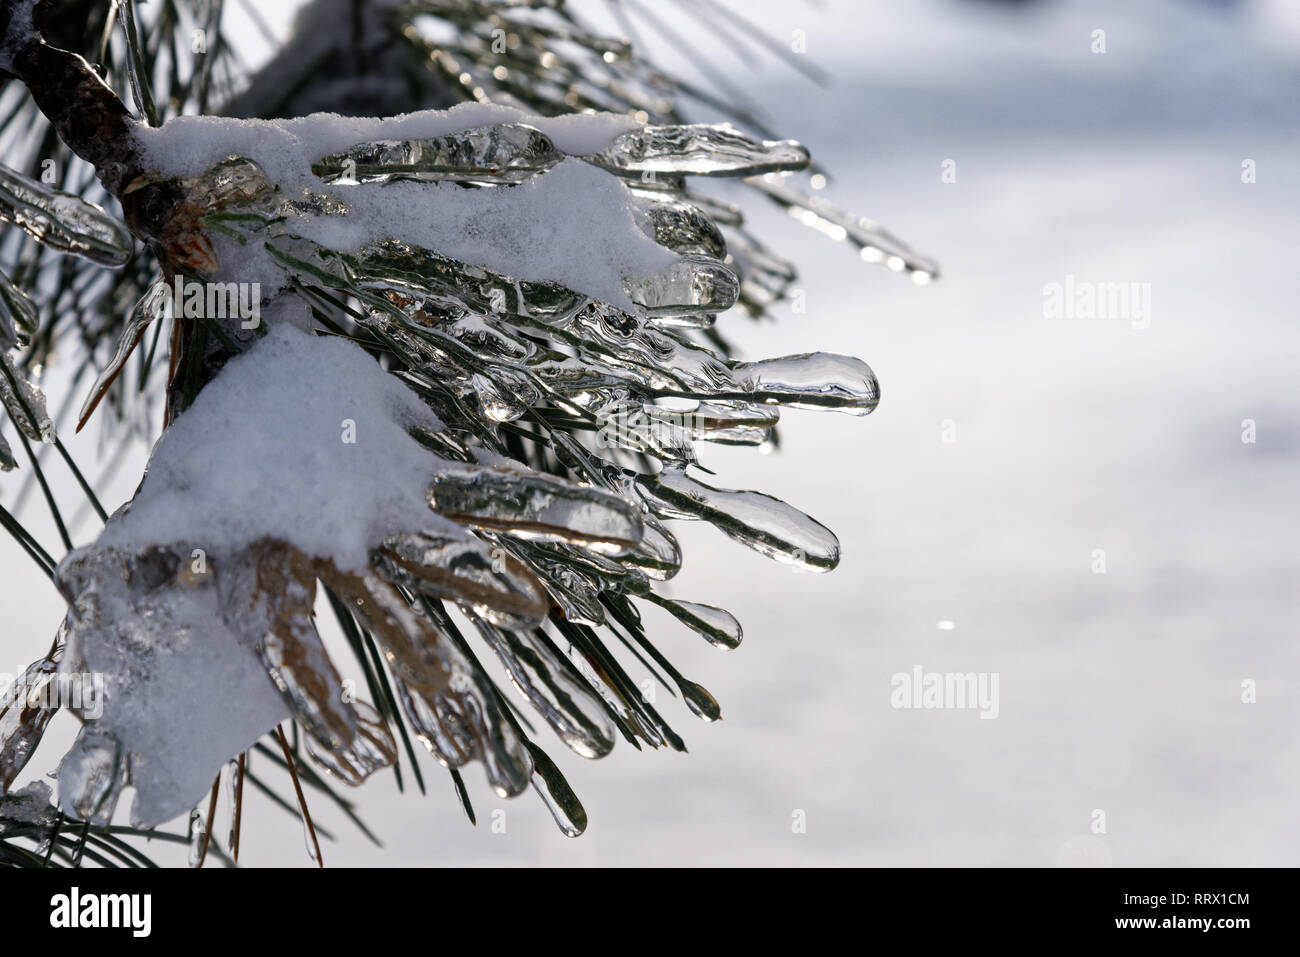 Les aiguilles de pin enrobé de glace après la pluie verglaçante au Québec, Canada Banque D'Images